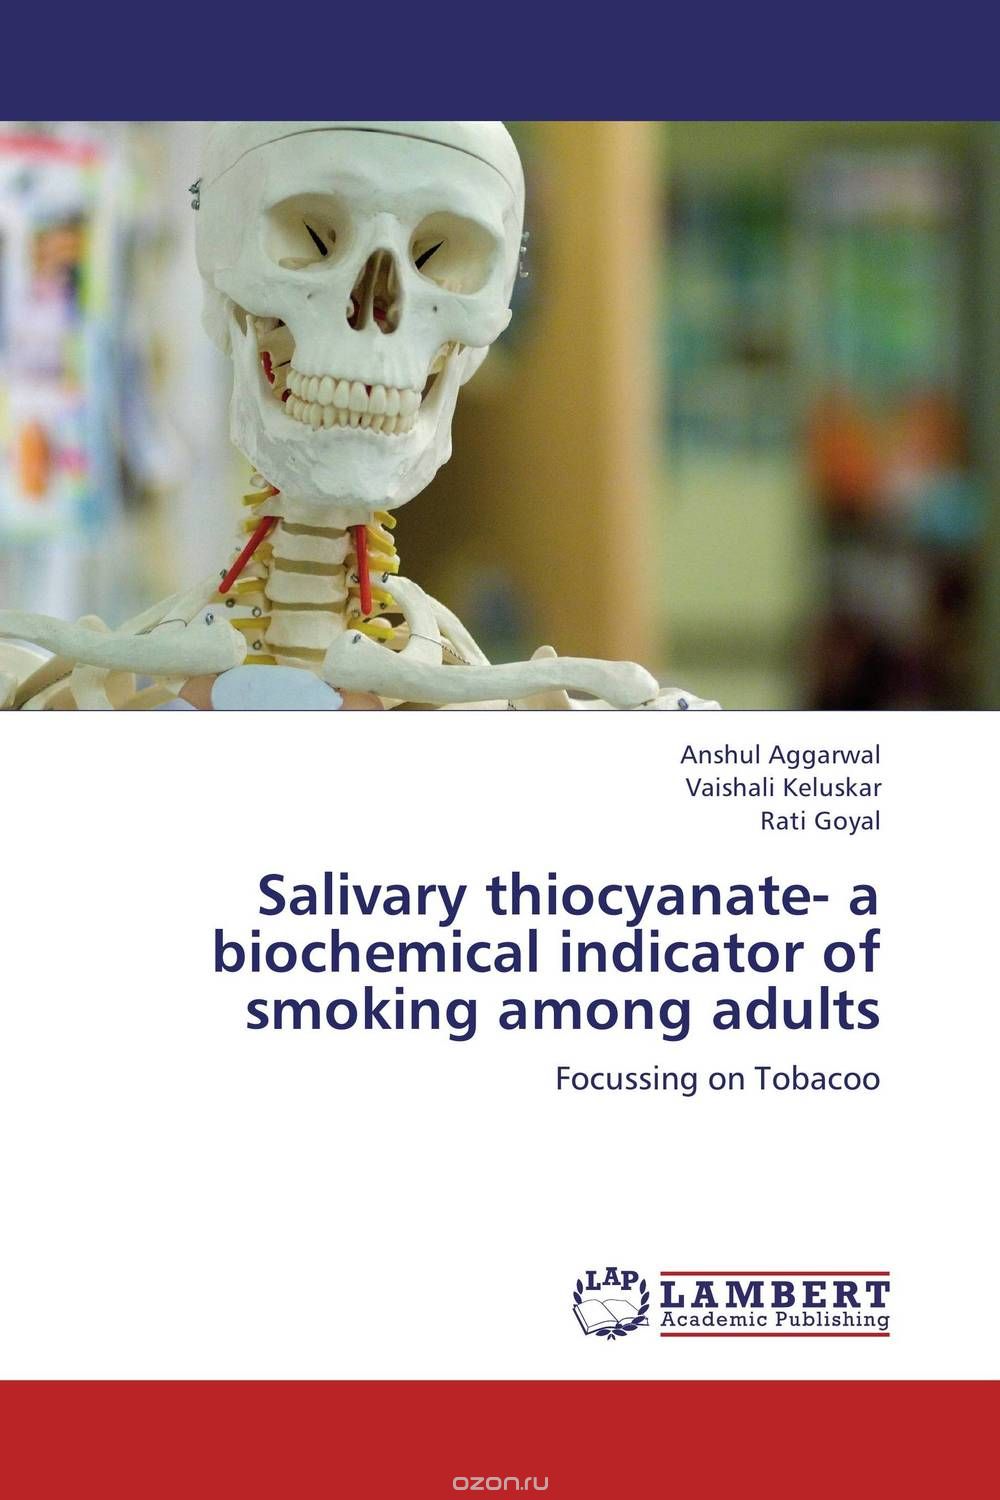 Salivary thiocyanate- a biochemical indicator of smoking among adults